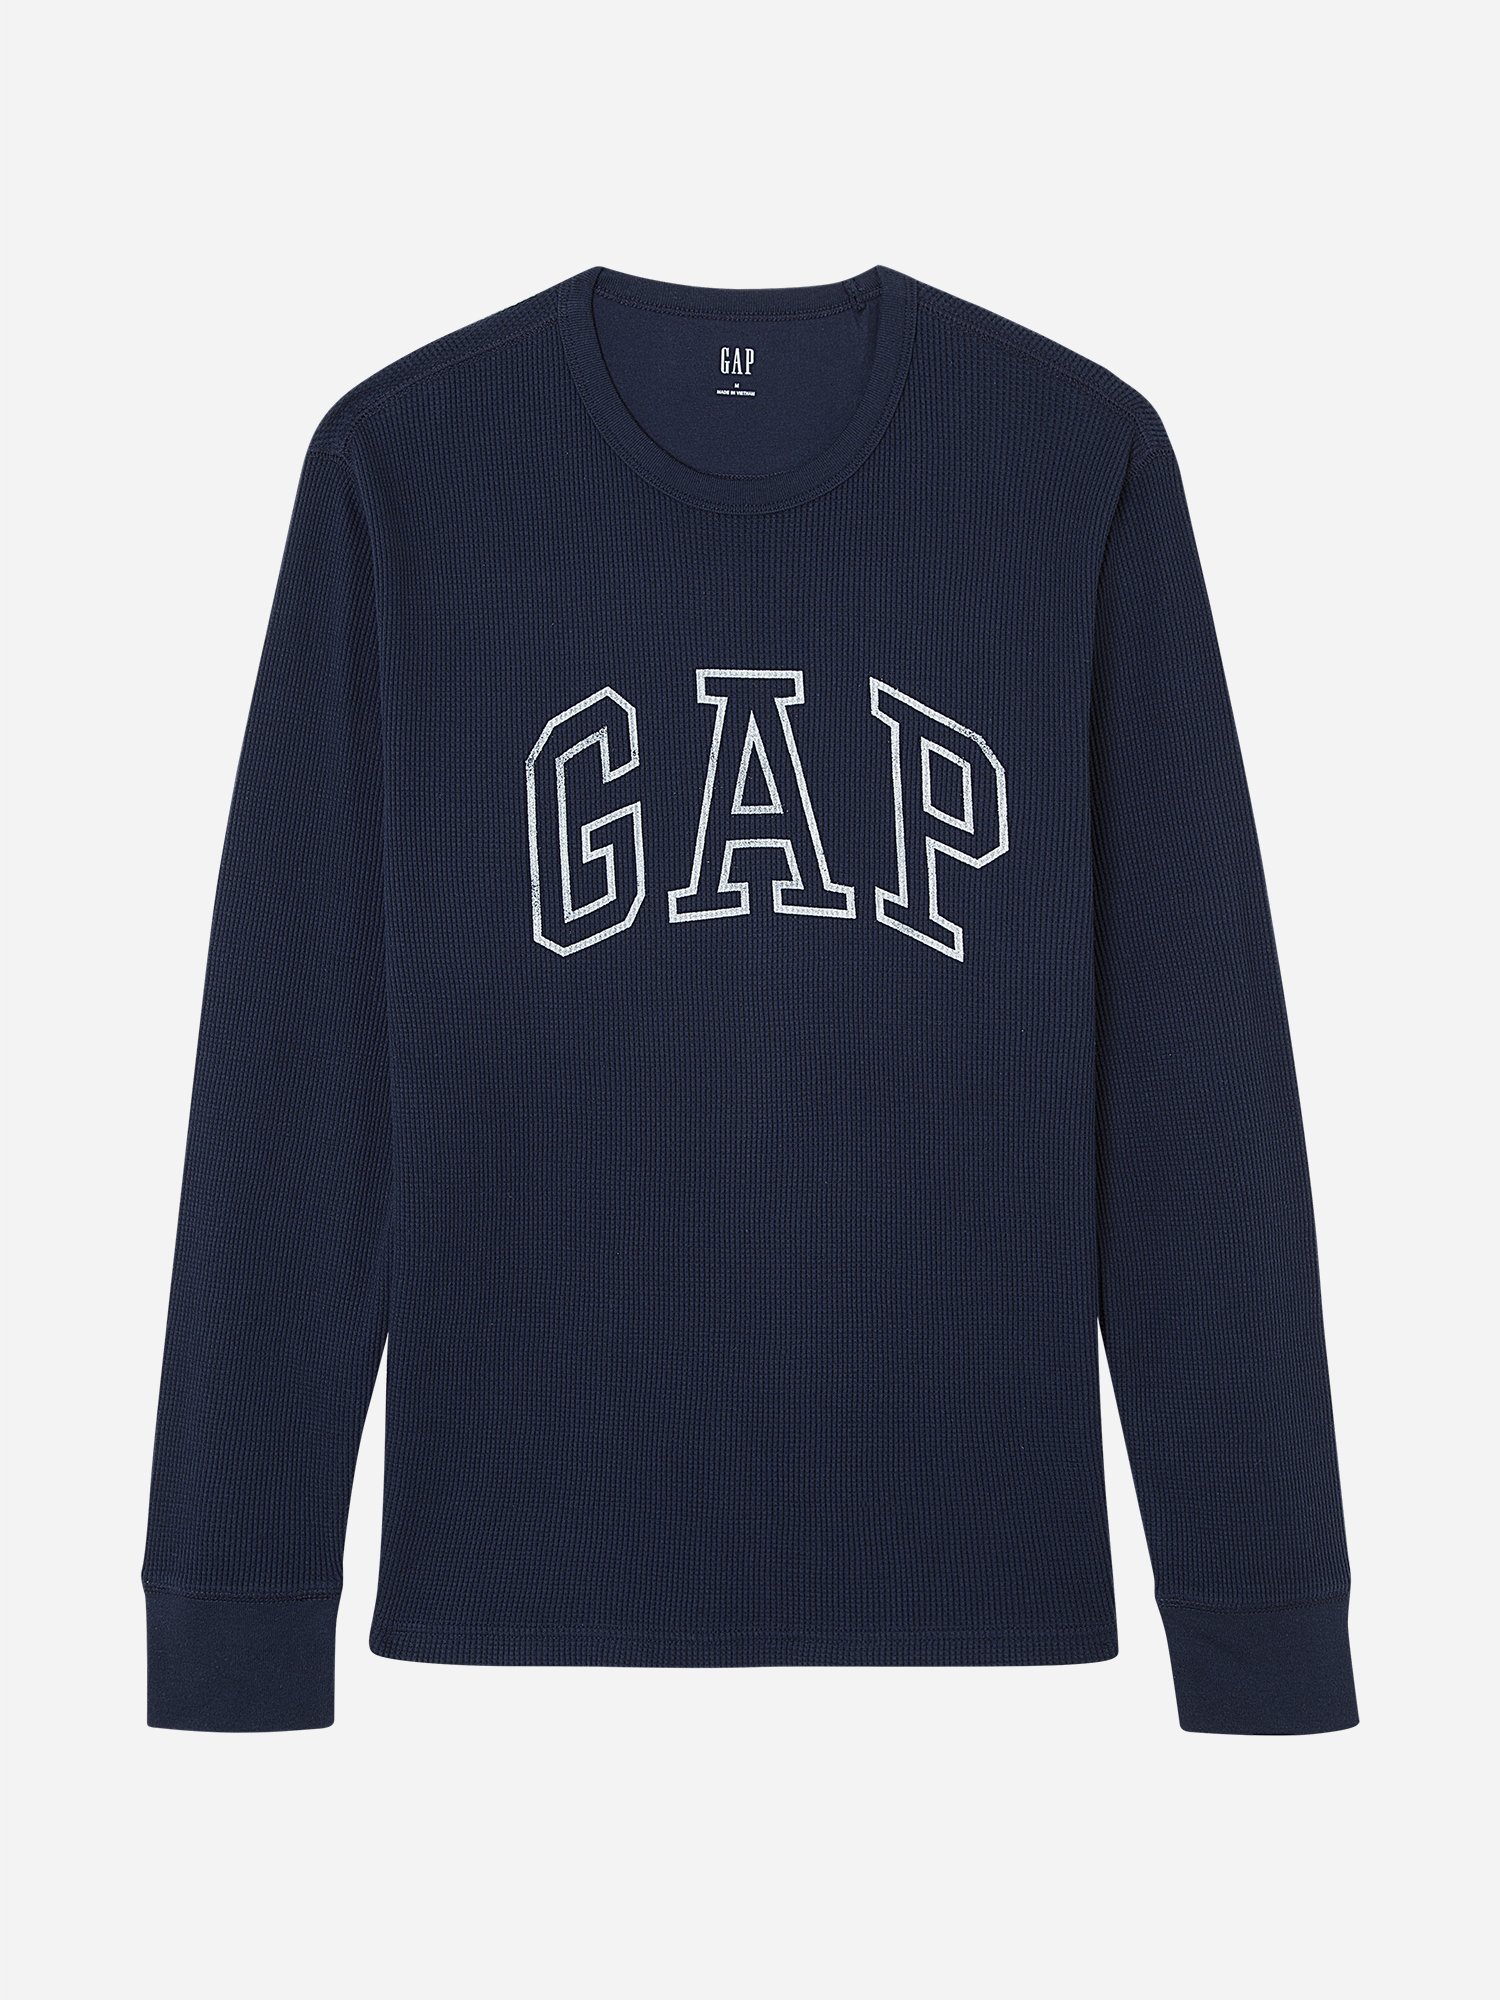 Gap Logo Termal T-Shirt product image